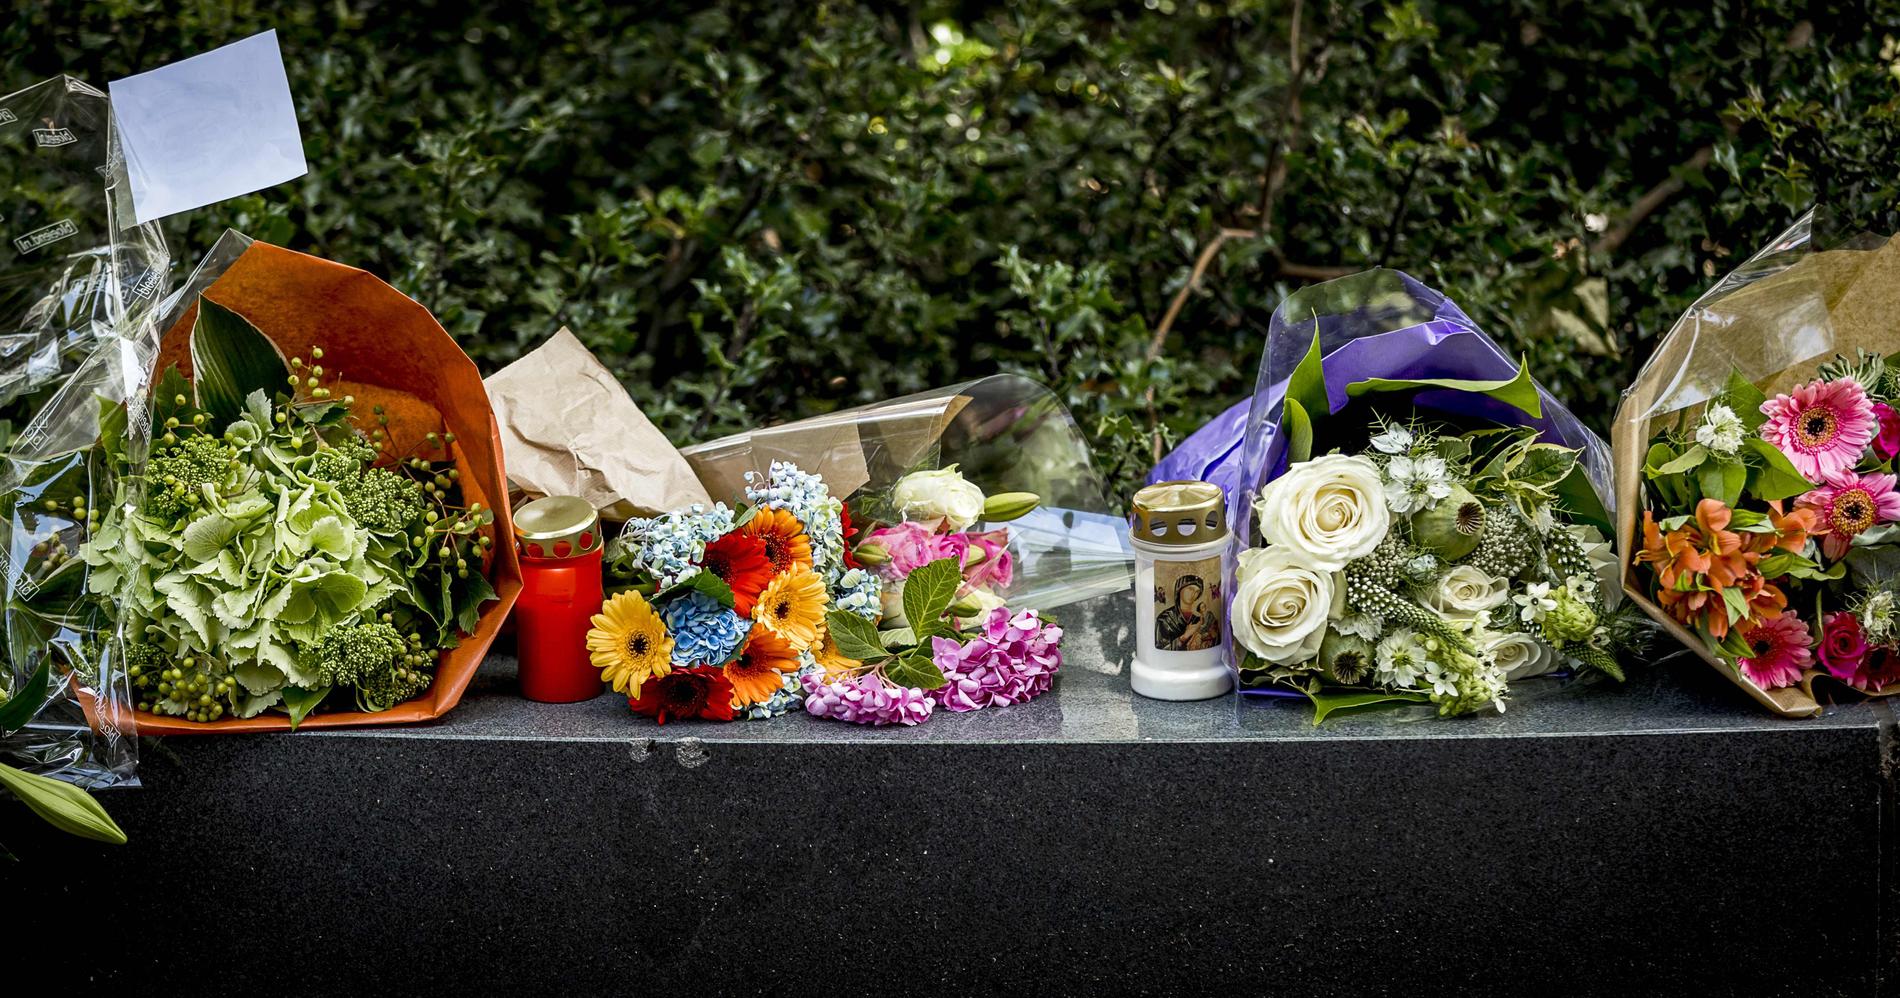 Även i Haag utanför den franska ambassaden placerades blommor och ljus för att hedra offren i attacken.